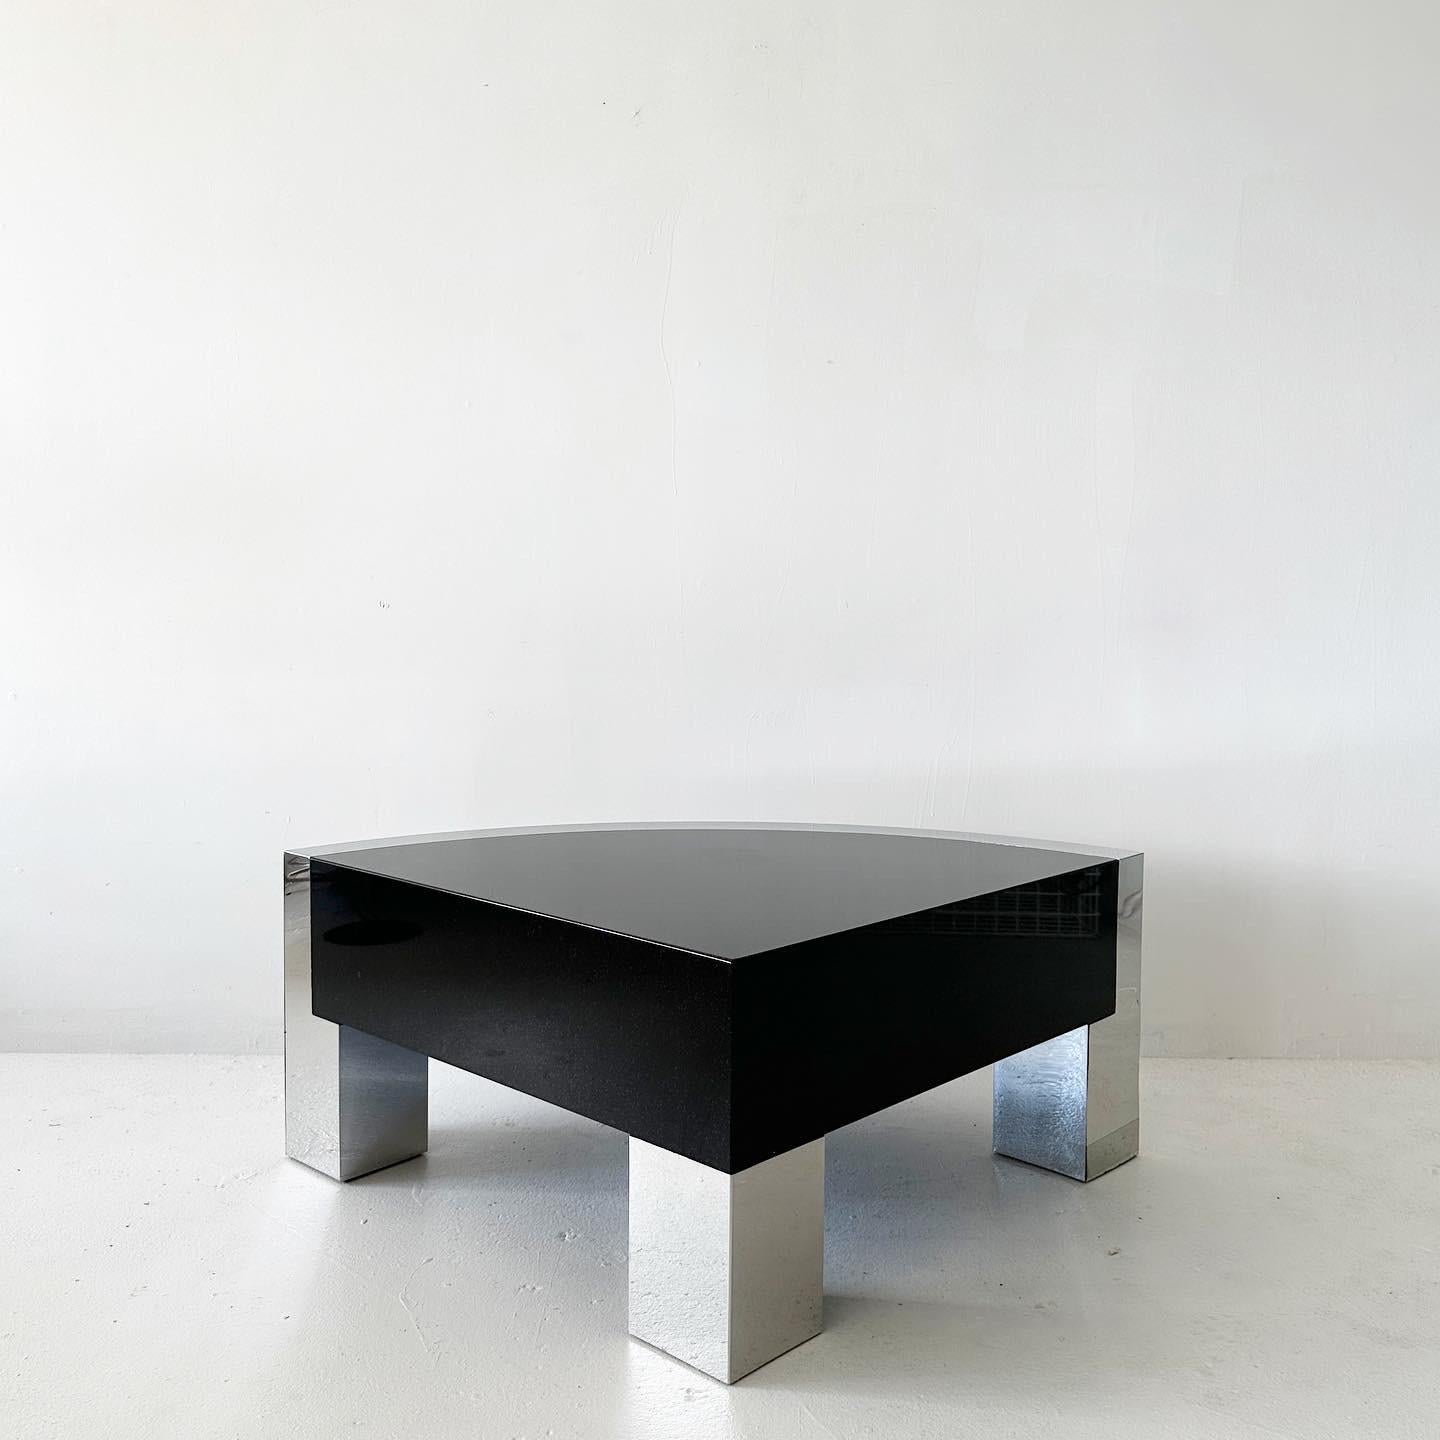 table d'angle arrondie, table basse ou table d'appoint en granit et chrome miroir. extraordinaire et substantielle. Il peut être placé seul devant un siège ou, grâce à son design en quart de cercle à 90 degrés, il peut s'intégrer dans un coin ou